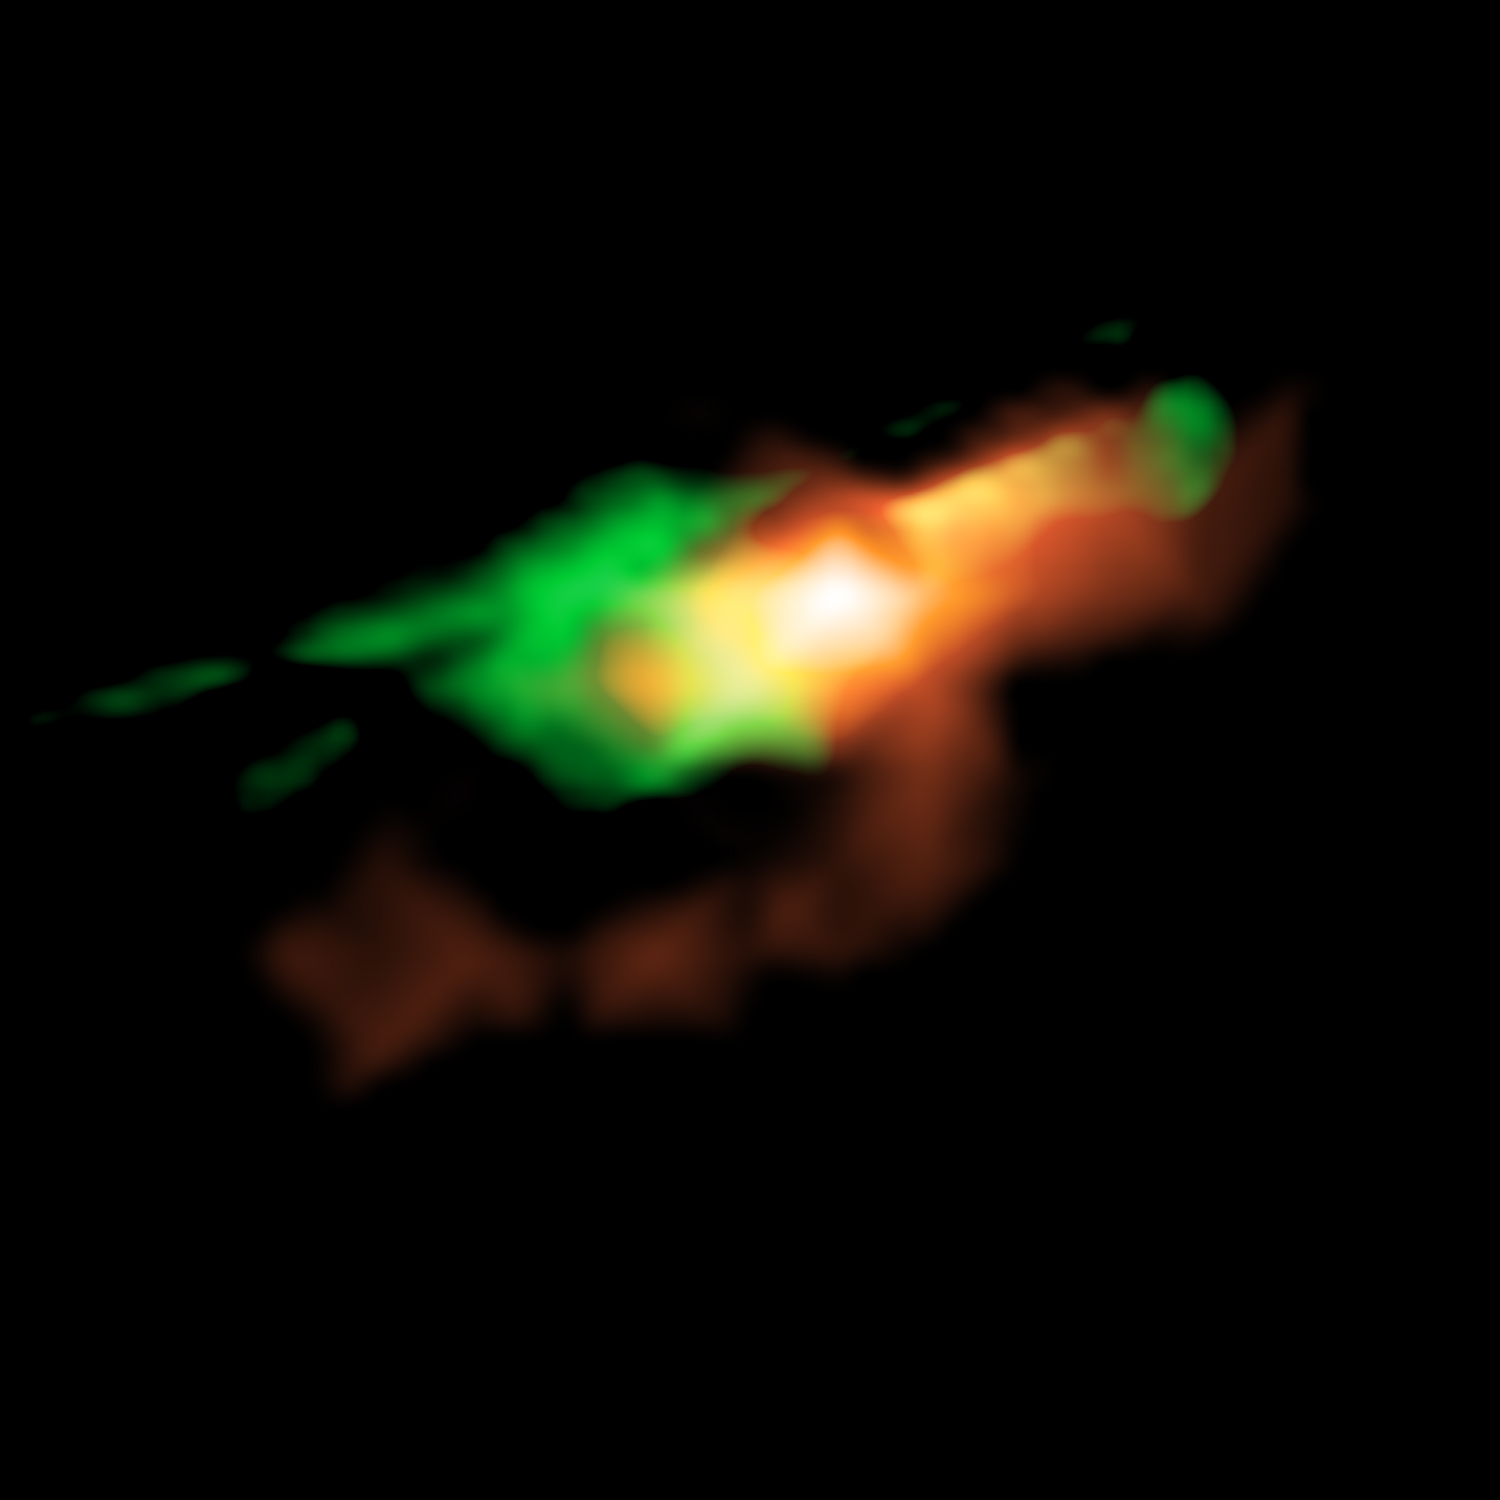 Imágenes reconstituidas que muestran cómo se vería MG J0414+0534 sin el efecto del lente gravitacional. Las emisiones del polvo y el gas ionizado alrededor del cuásar se muestran en rojo y las emisiones de monóxido de carbono se muestran en verde, con una estructura bipolar en los chorros. Créditos: K. T. Inoue et al.